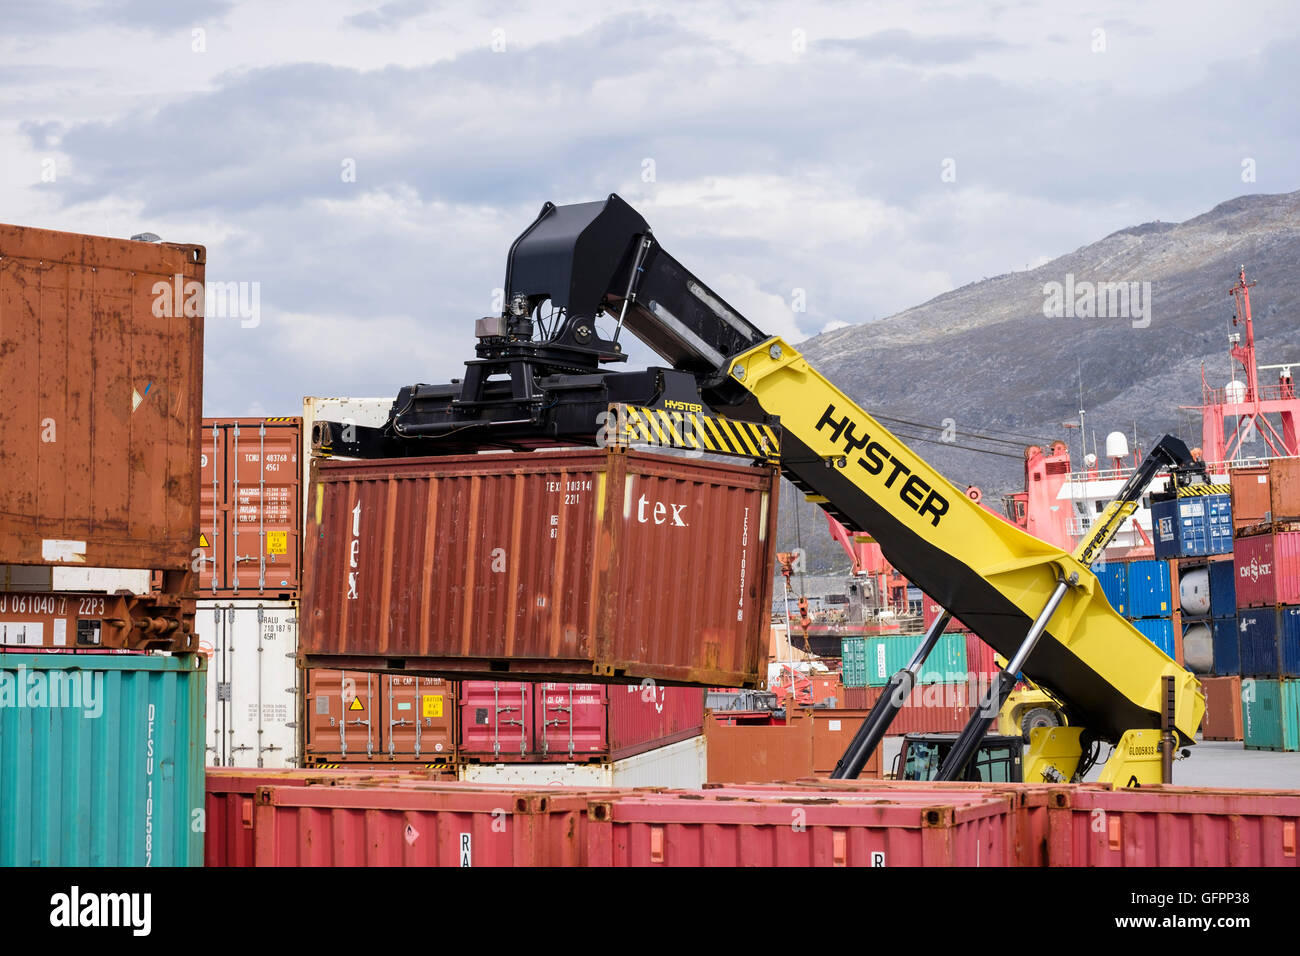 Hyster hydraulique de levage du chariot élévateur électrique les conteneurs d'expédition de marchandises au port. Port atlantique Nuuk Groenland Sermersooq Banque D'Images